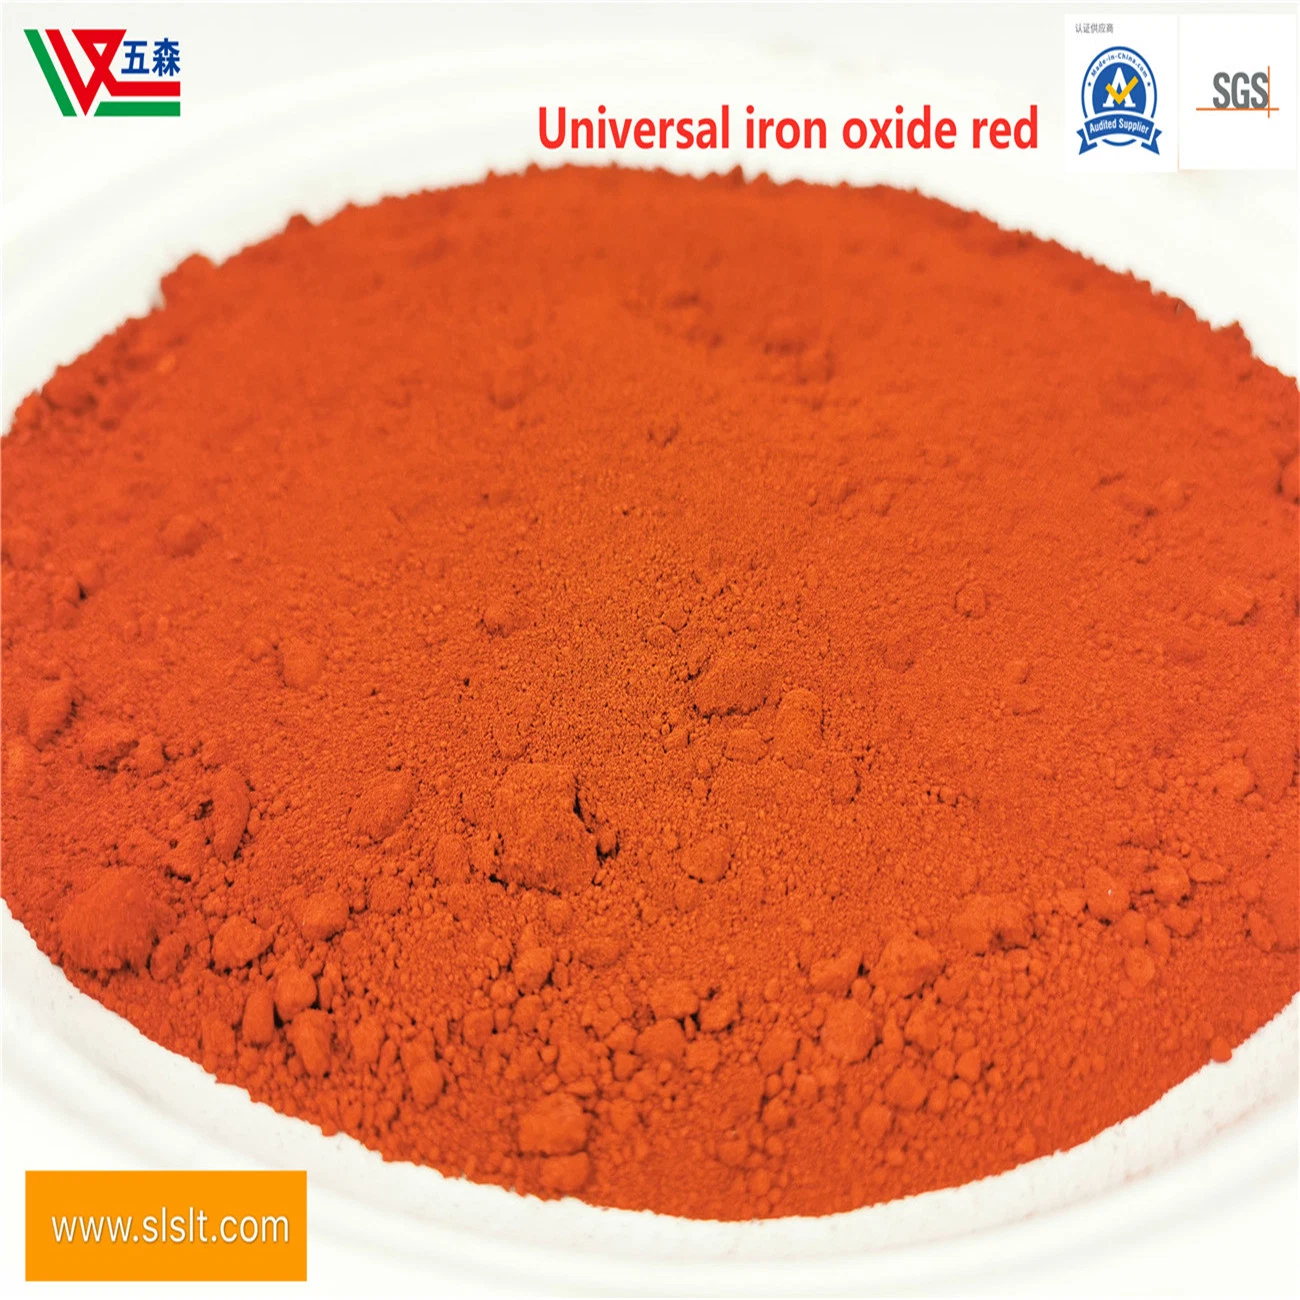 La vente de béton le Pigment Oxyde de fer rouge en poudre pigment rouge de fer spécial pour l'asphalte de la chaussée perméable